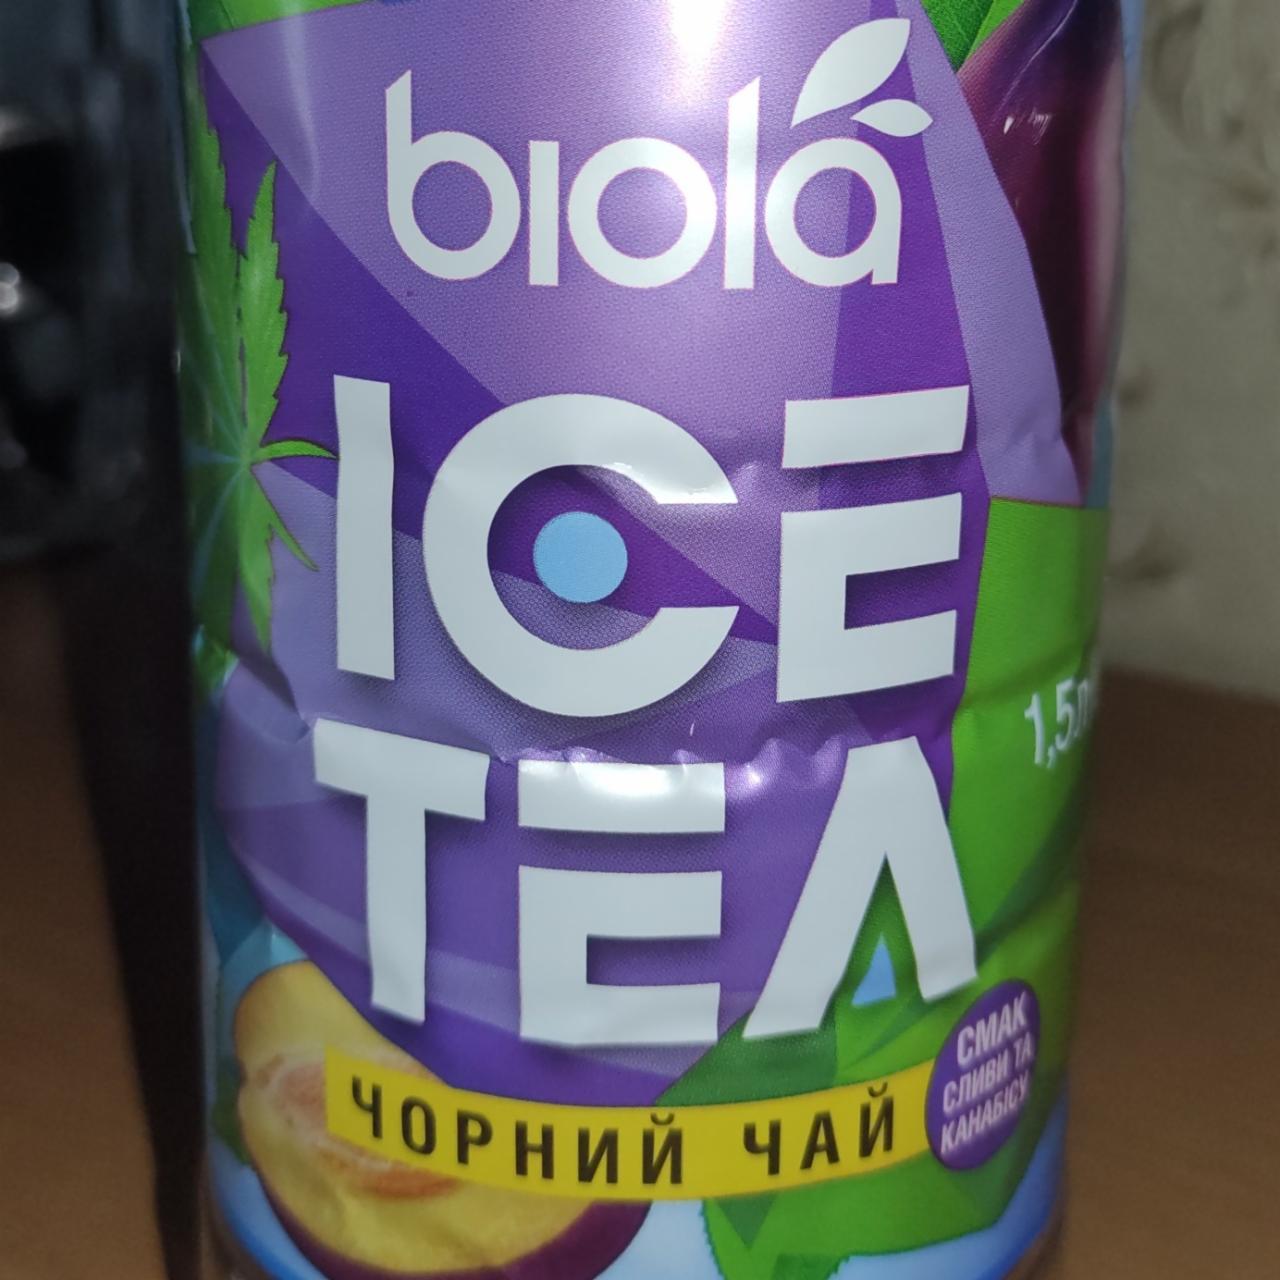 Фото - Черный чай вкус сливы и каннабиса Ice Tea Biola